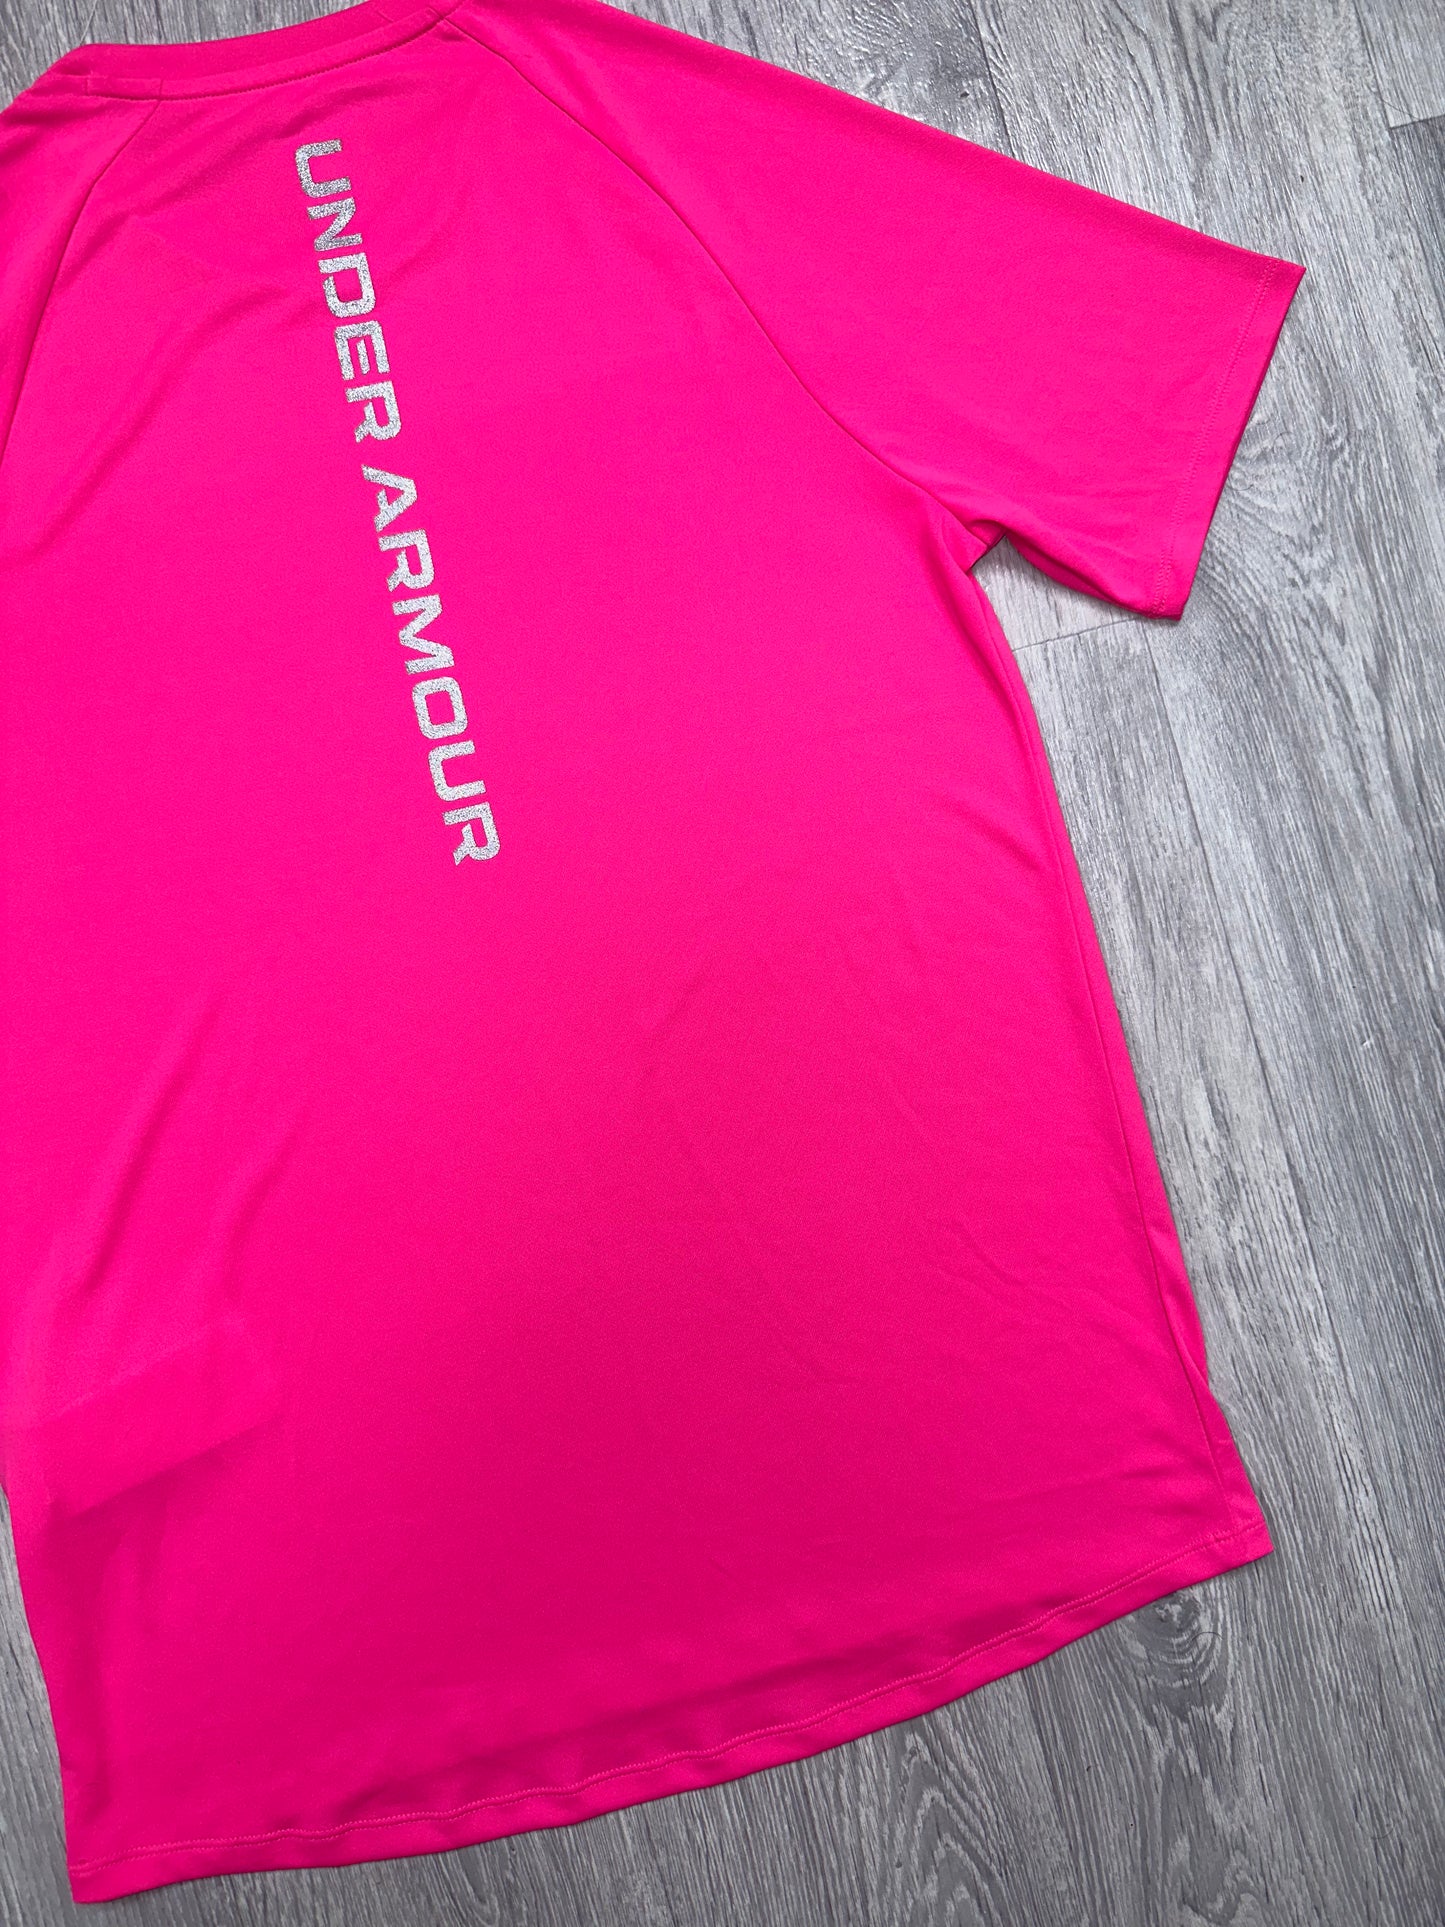 Under Armour Pink Tech Reflective T - Shirt